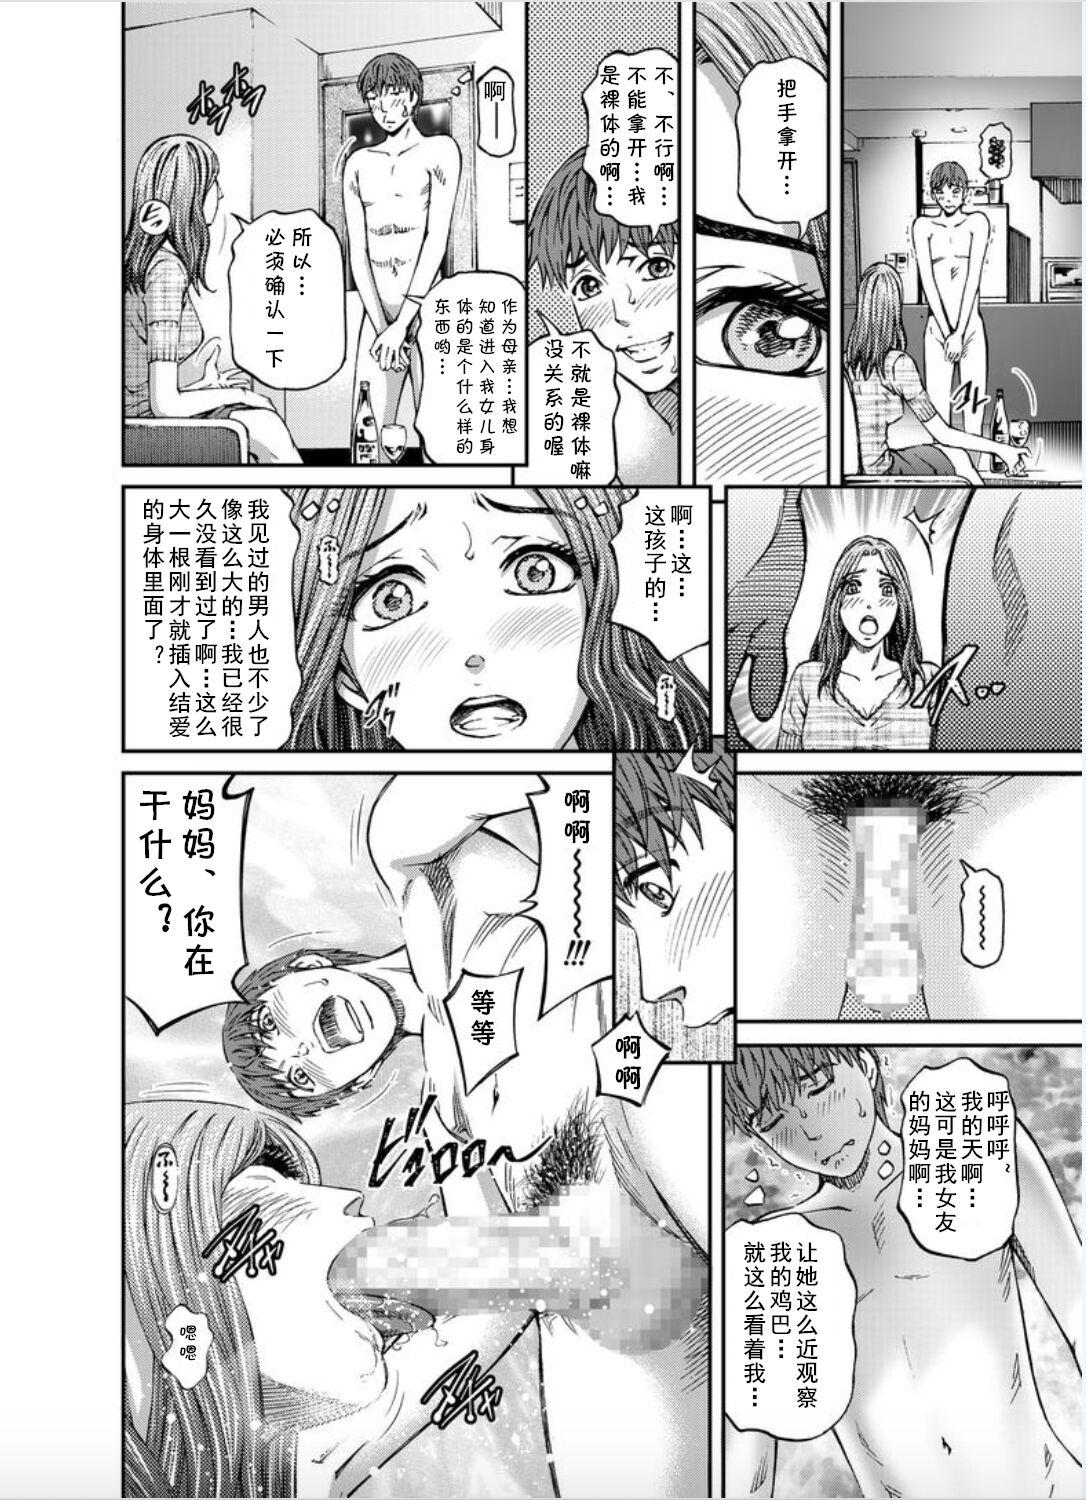 Mms Onna-tachi ga Iku Toki... Ero Drama Vol. 8 Datte, Kanojo no Haha ga... Hot Girl Porn - Page 6